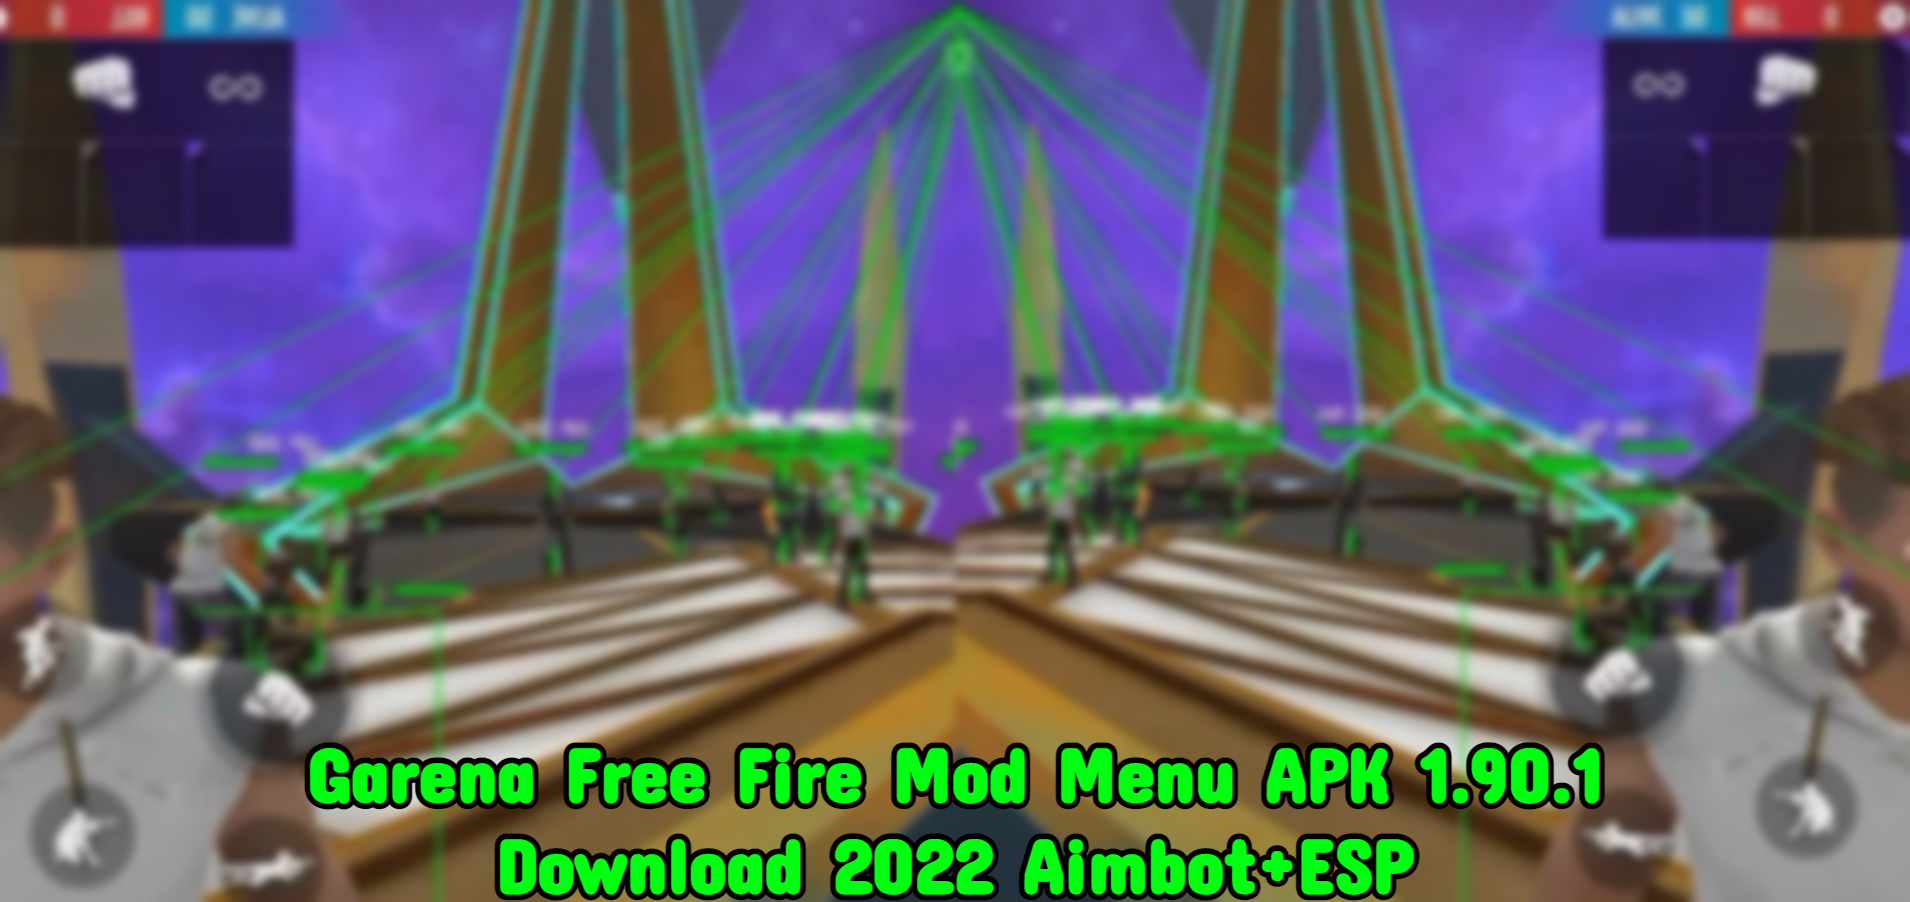 Garena Free Fire Mod Menu APK 1 90 1 Download 2022 AimbotESP